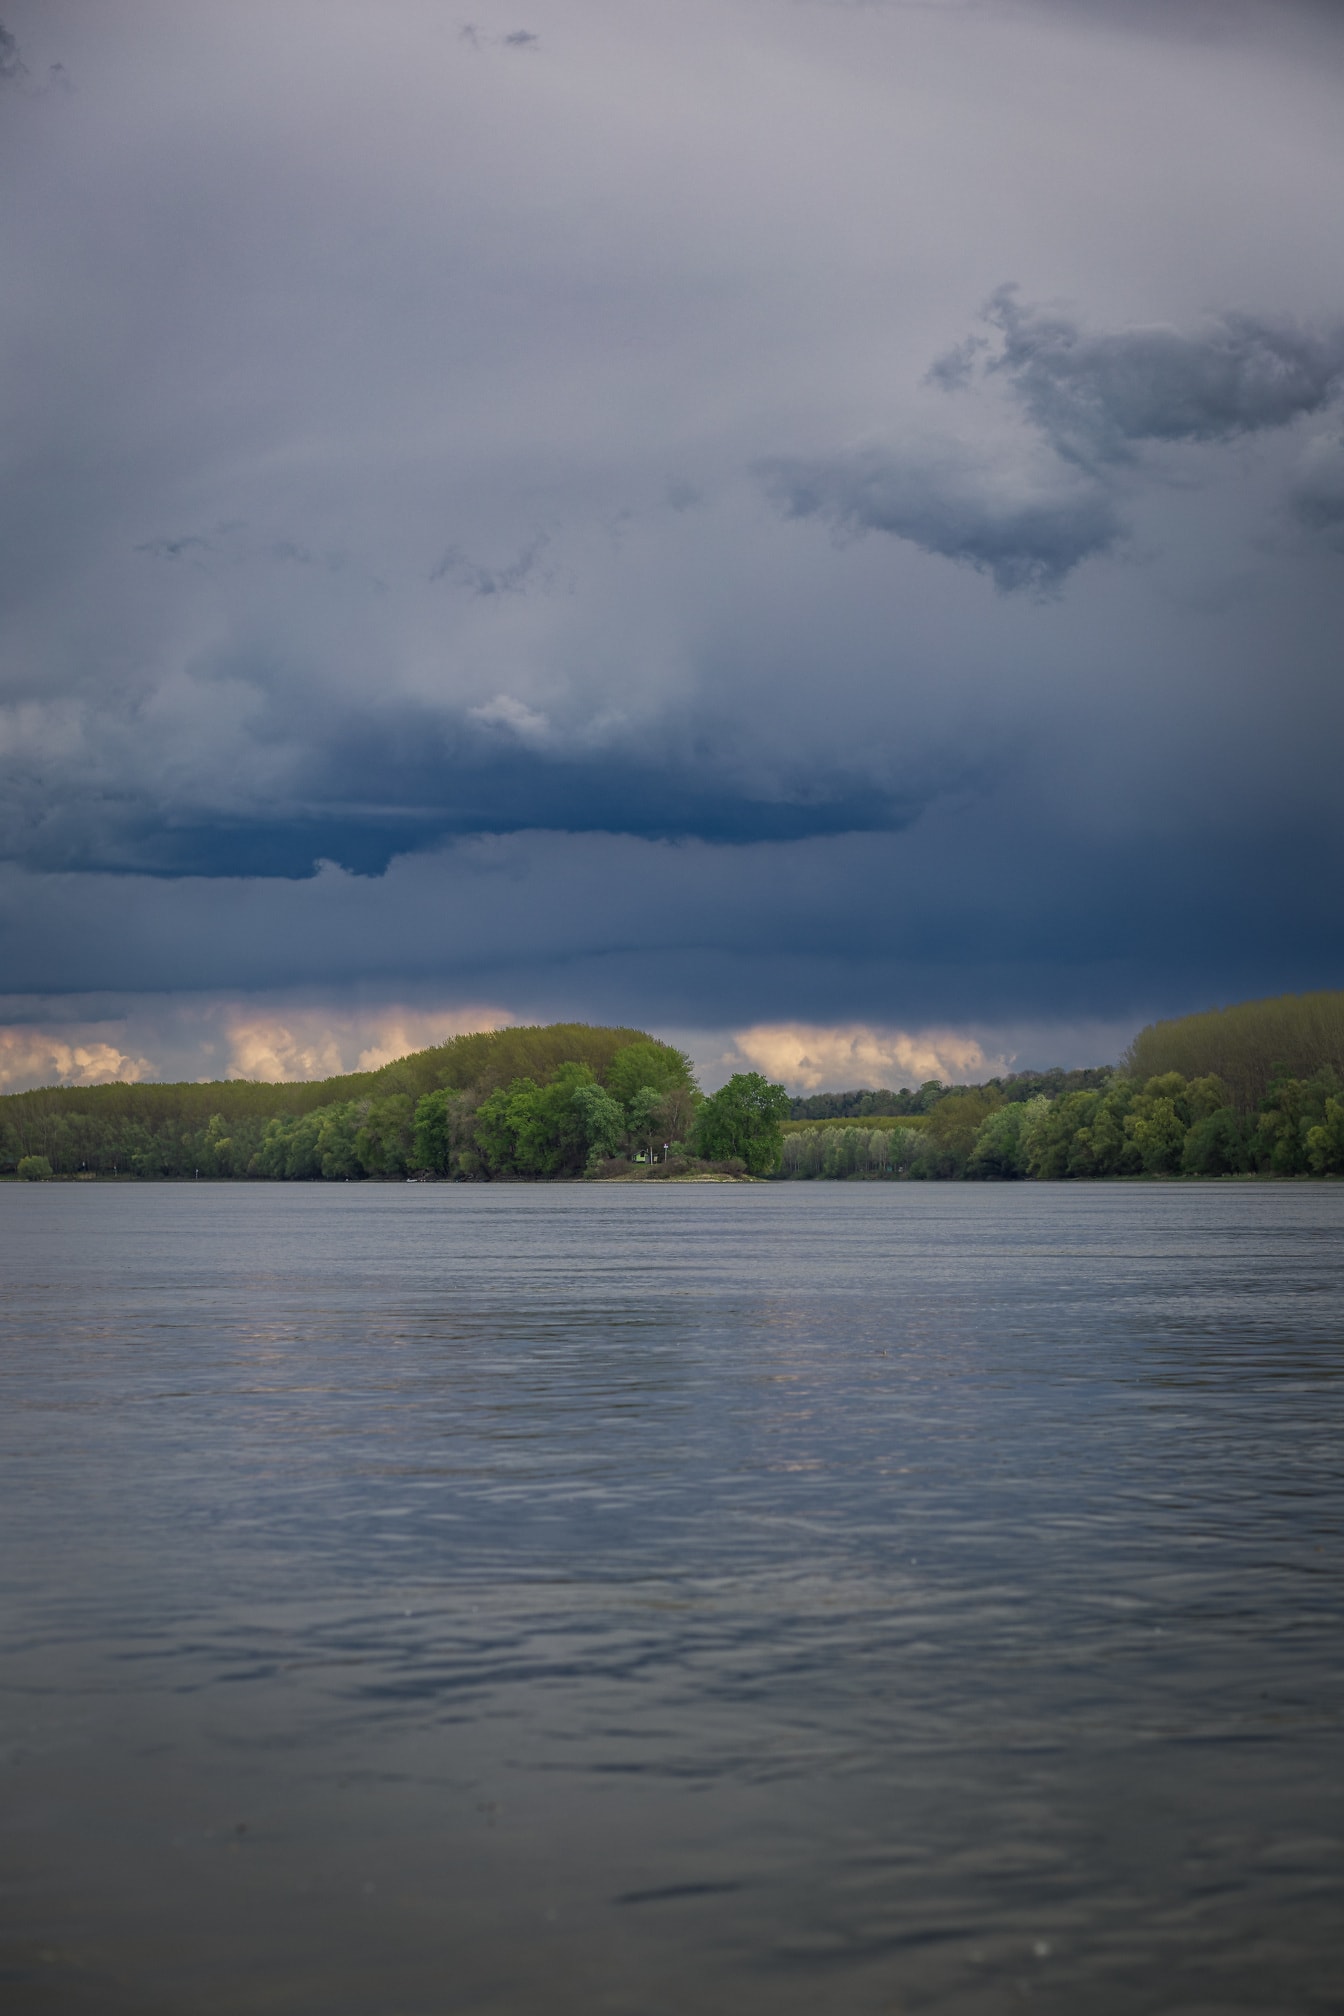 Nuages d’orage bleu foncé au-dessus du Danube